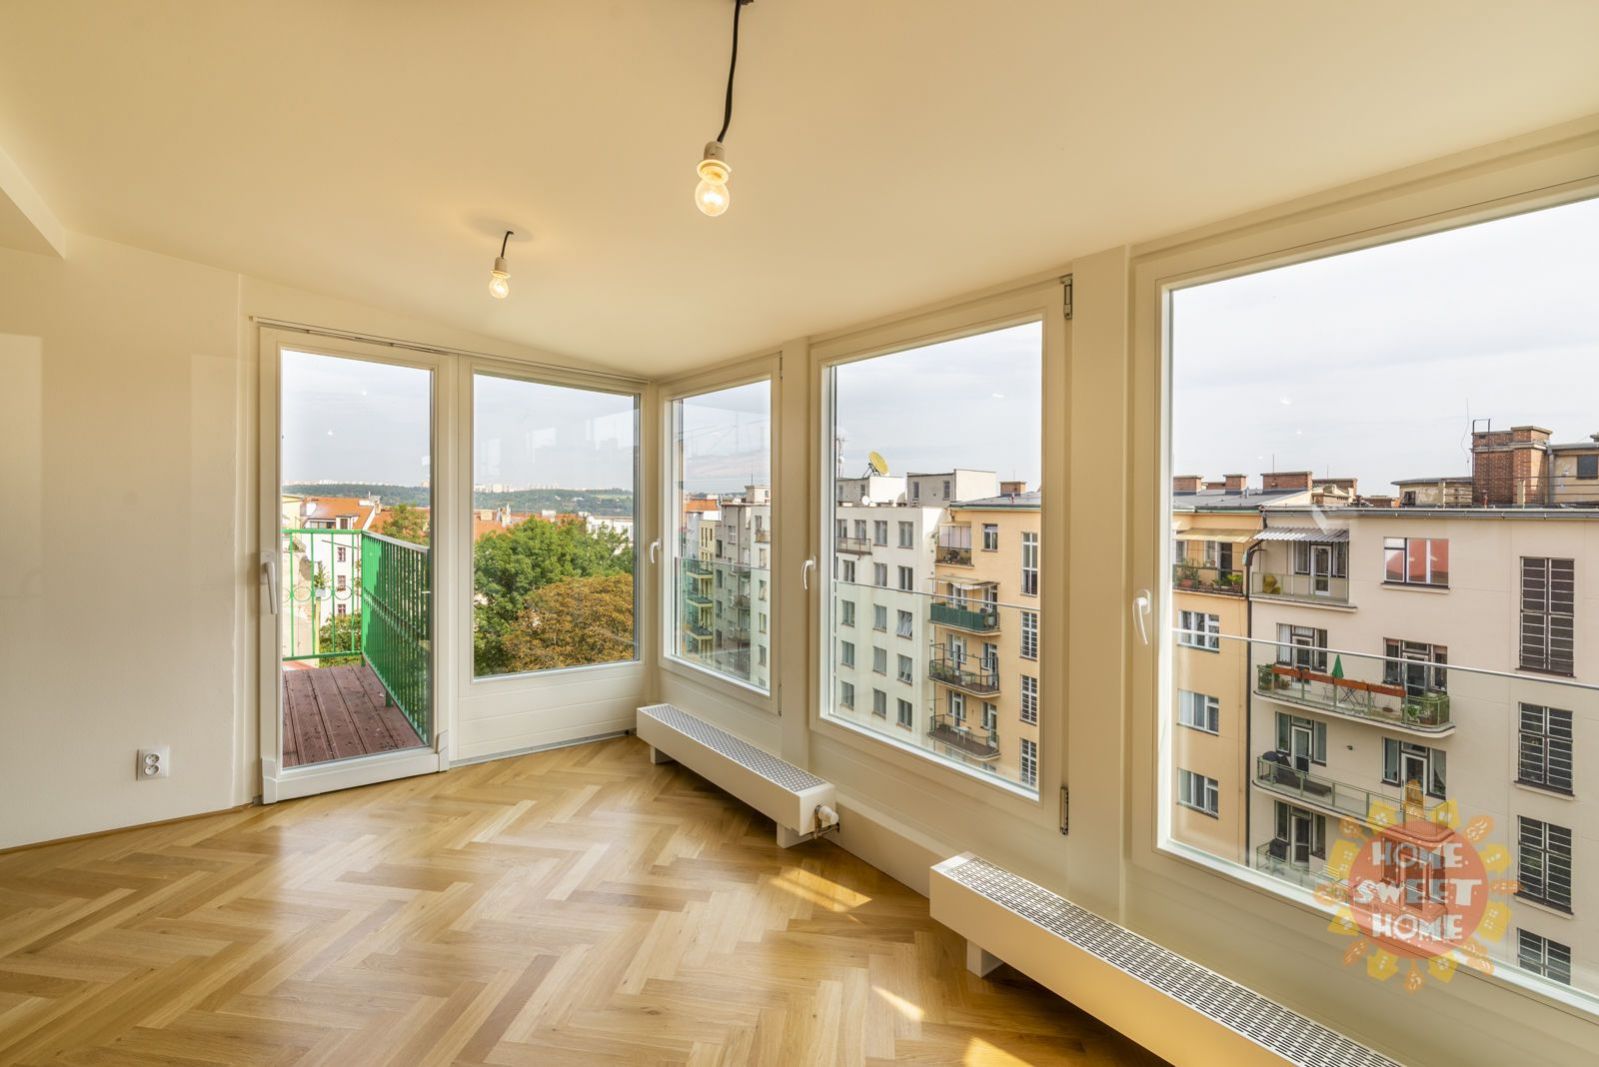 Podkrovní, světlý byt k prodeji 5kk, 165,7 m2, 2 x balkon, sklep, ul. Šmeralova - Praha 7 - Letná, obrázek č. 1